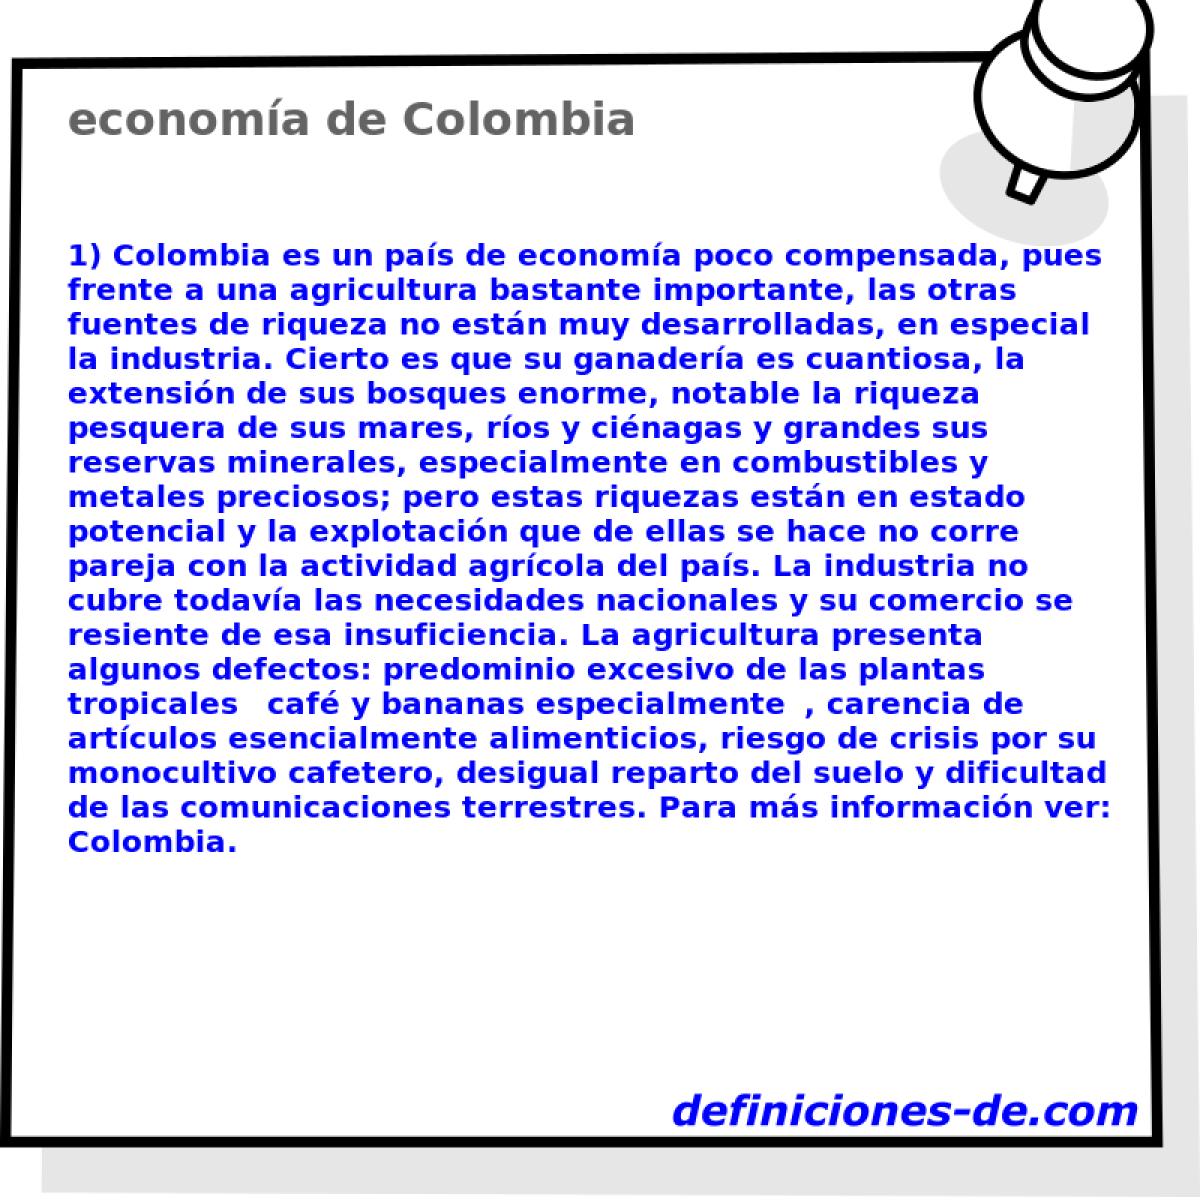 economa de Colombia 